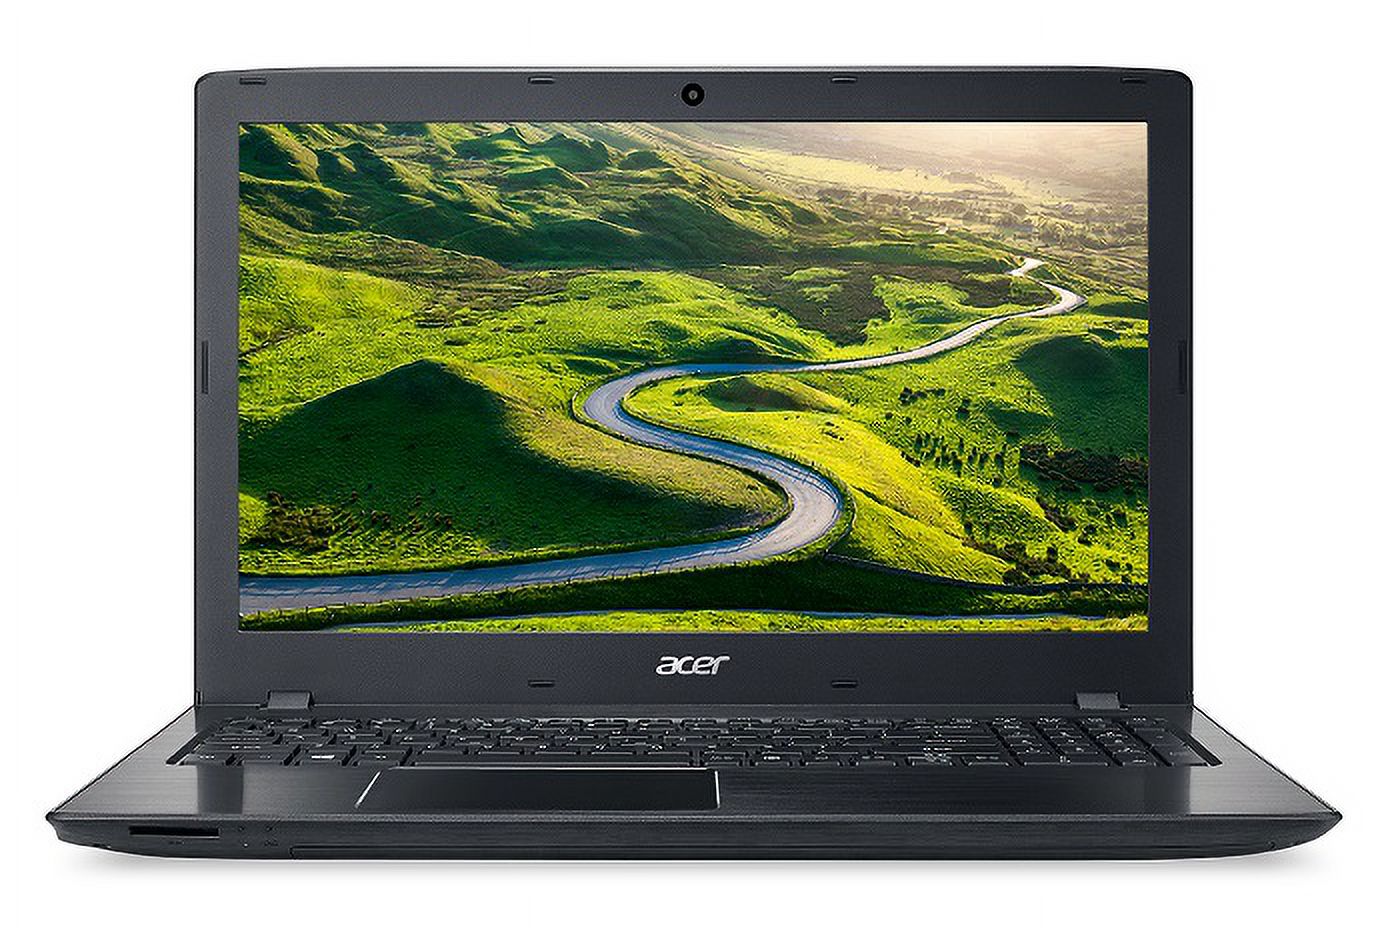 Acer Aspire E5-575-72N3, 15.6" Full HD, 7th Gen Intel Core i7-7500U, 8GB DDR4, 1TB HDD, Windows 10 Home - image 4 of 6